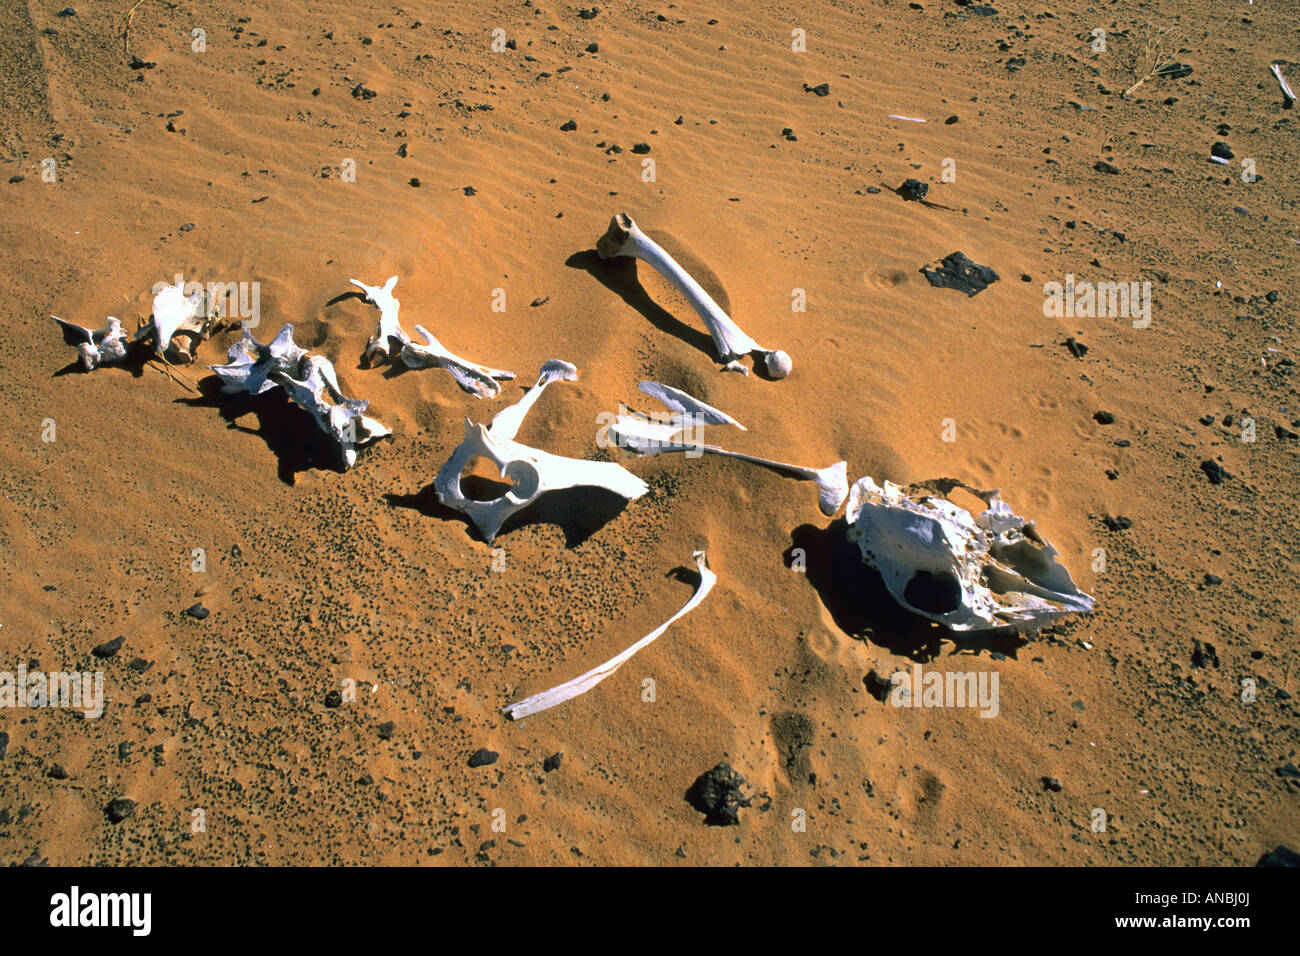 La séché reste de certains du squelette (os) d'un dromadaire (chameau) dans le sable du désert Banque D'Images